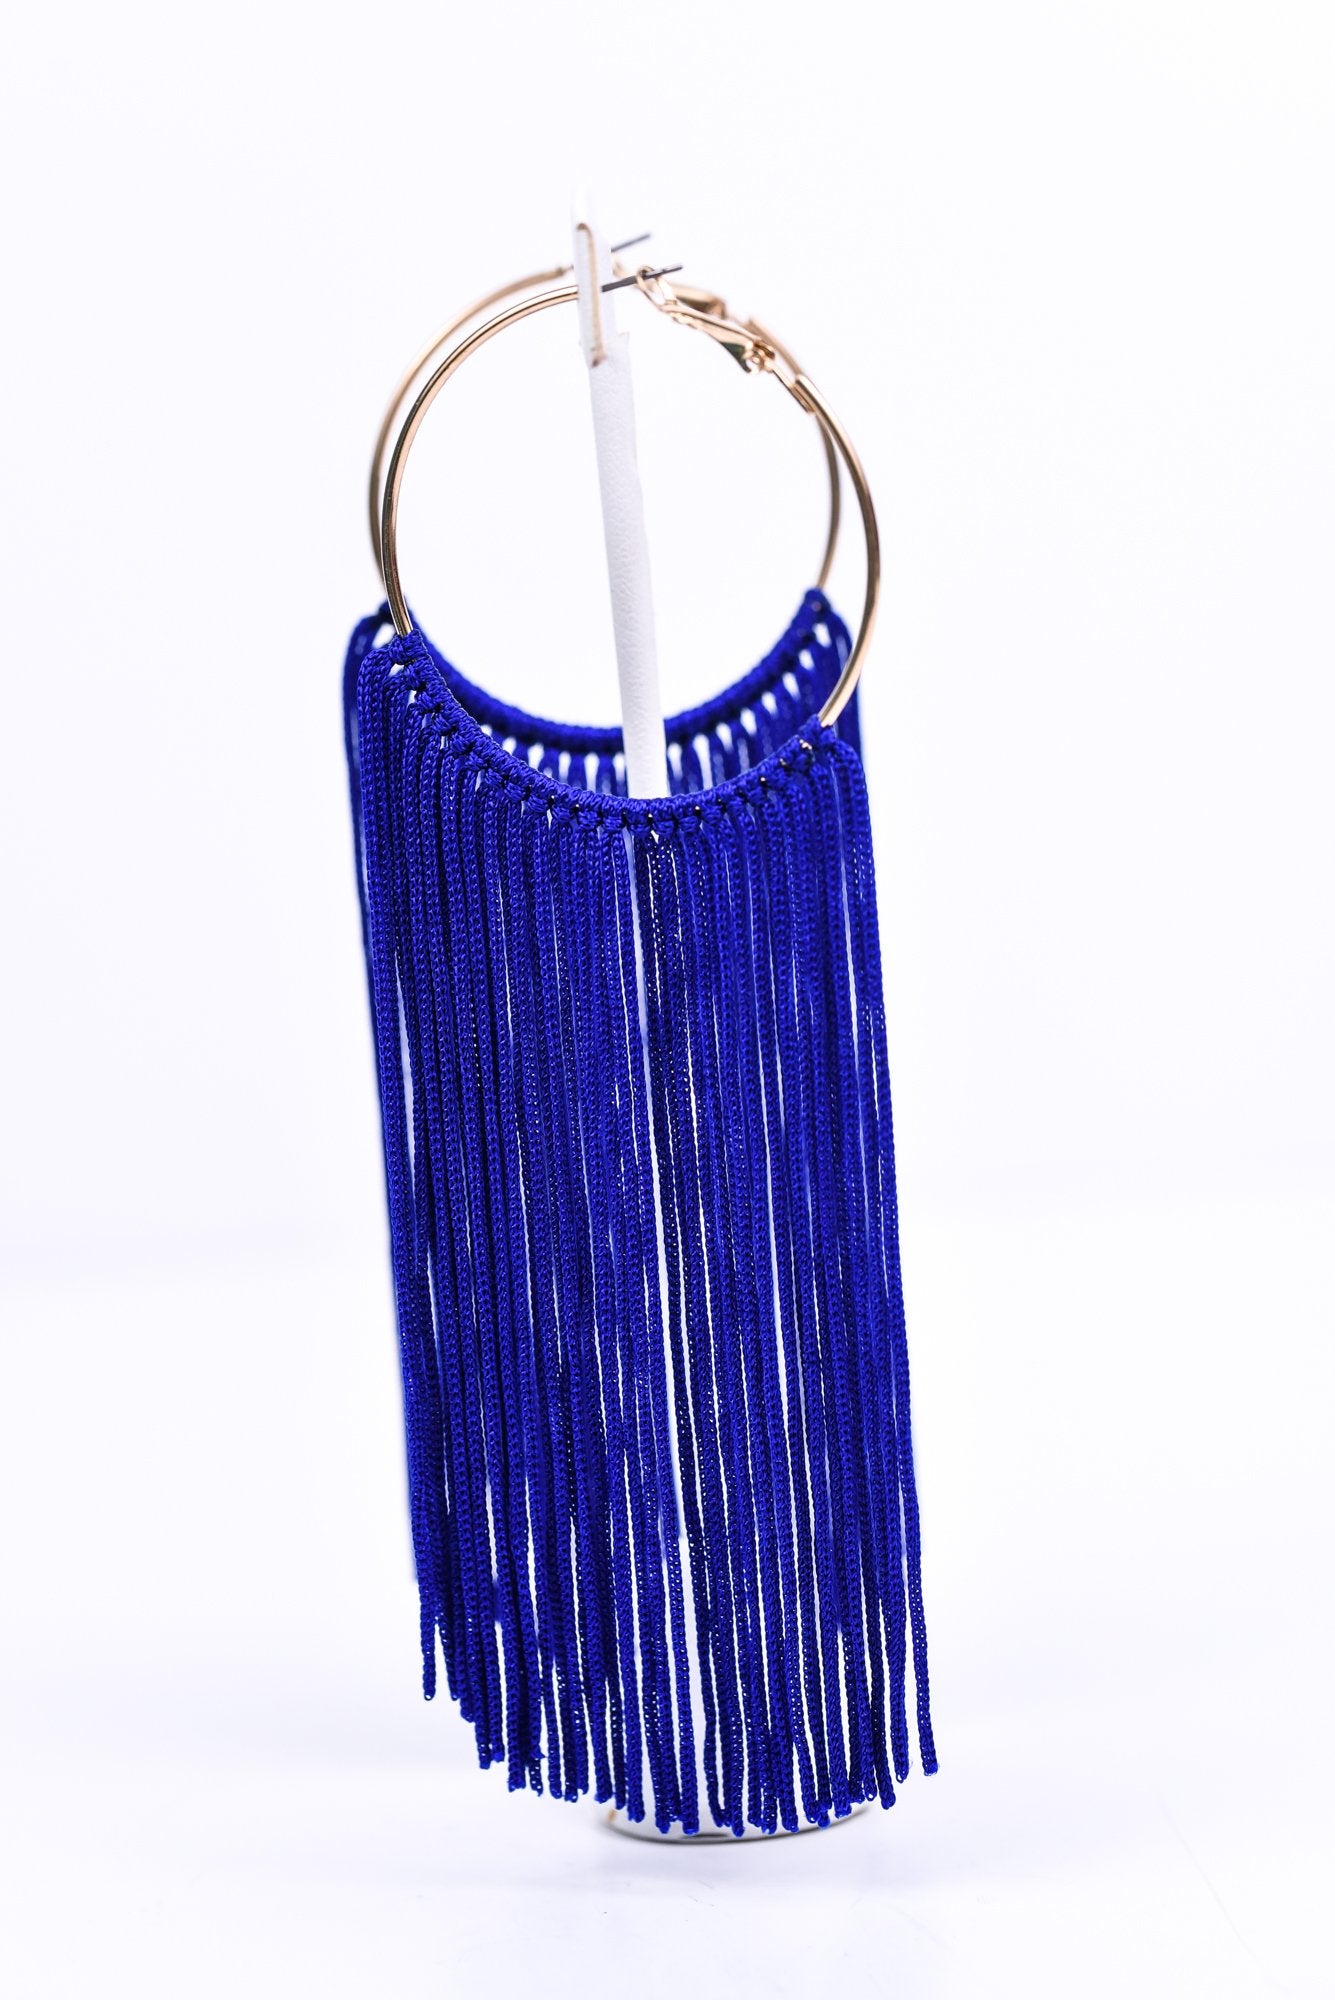 Long Dark Blue/Gold Tassel Hoop Earrings - EAR4151DBL